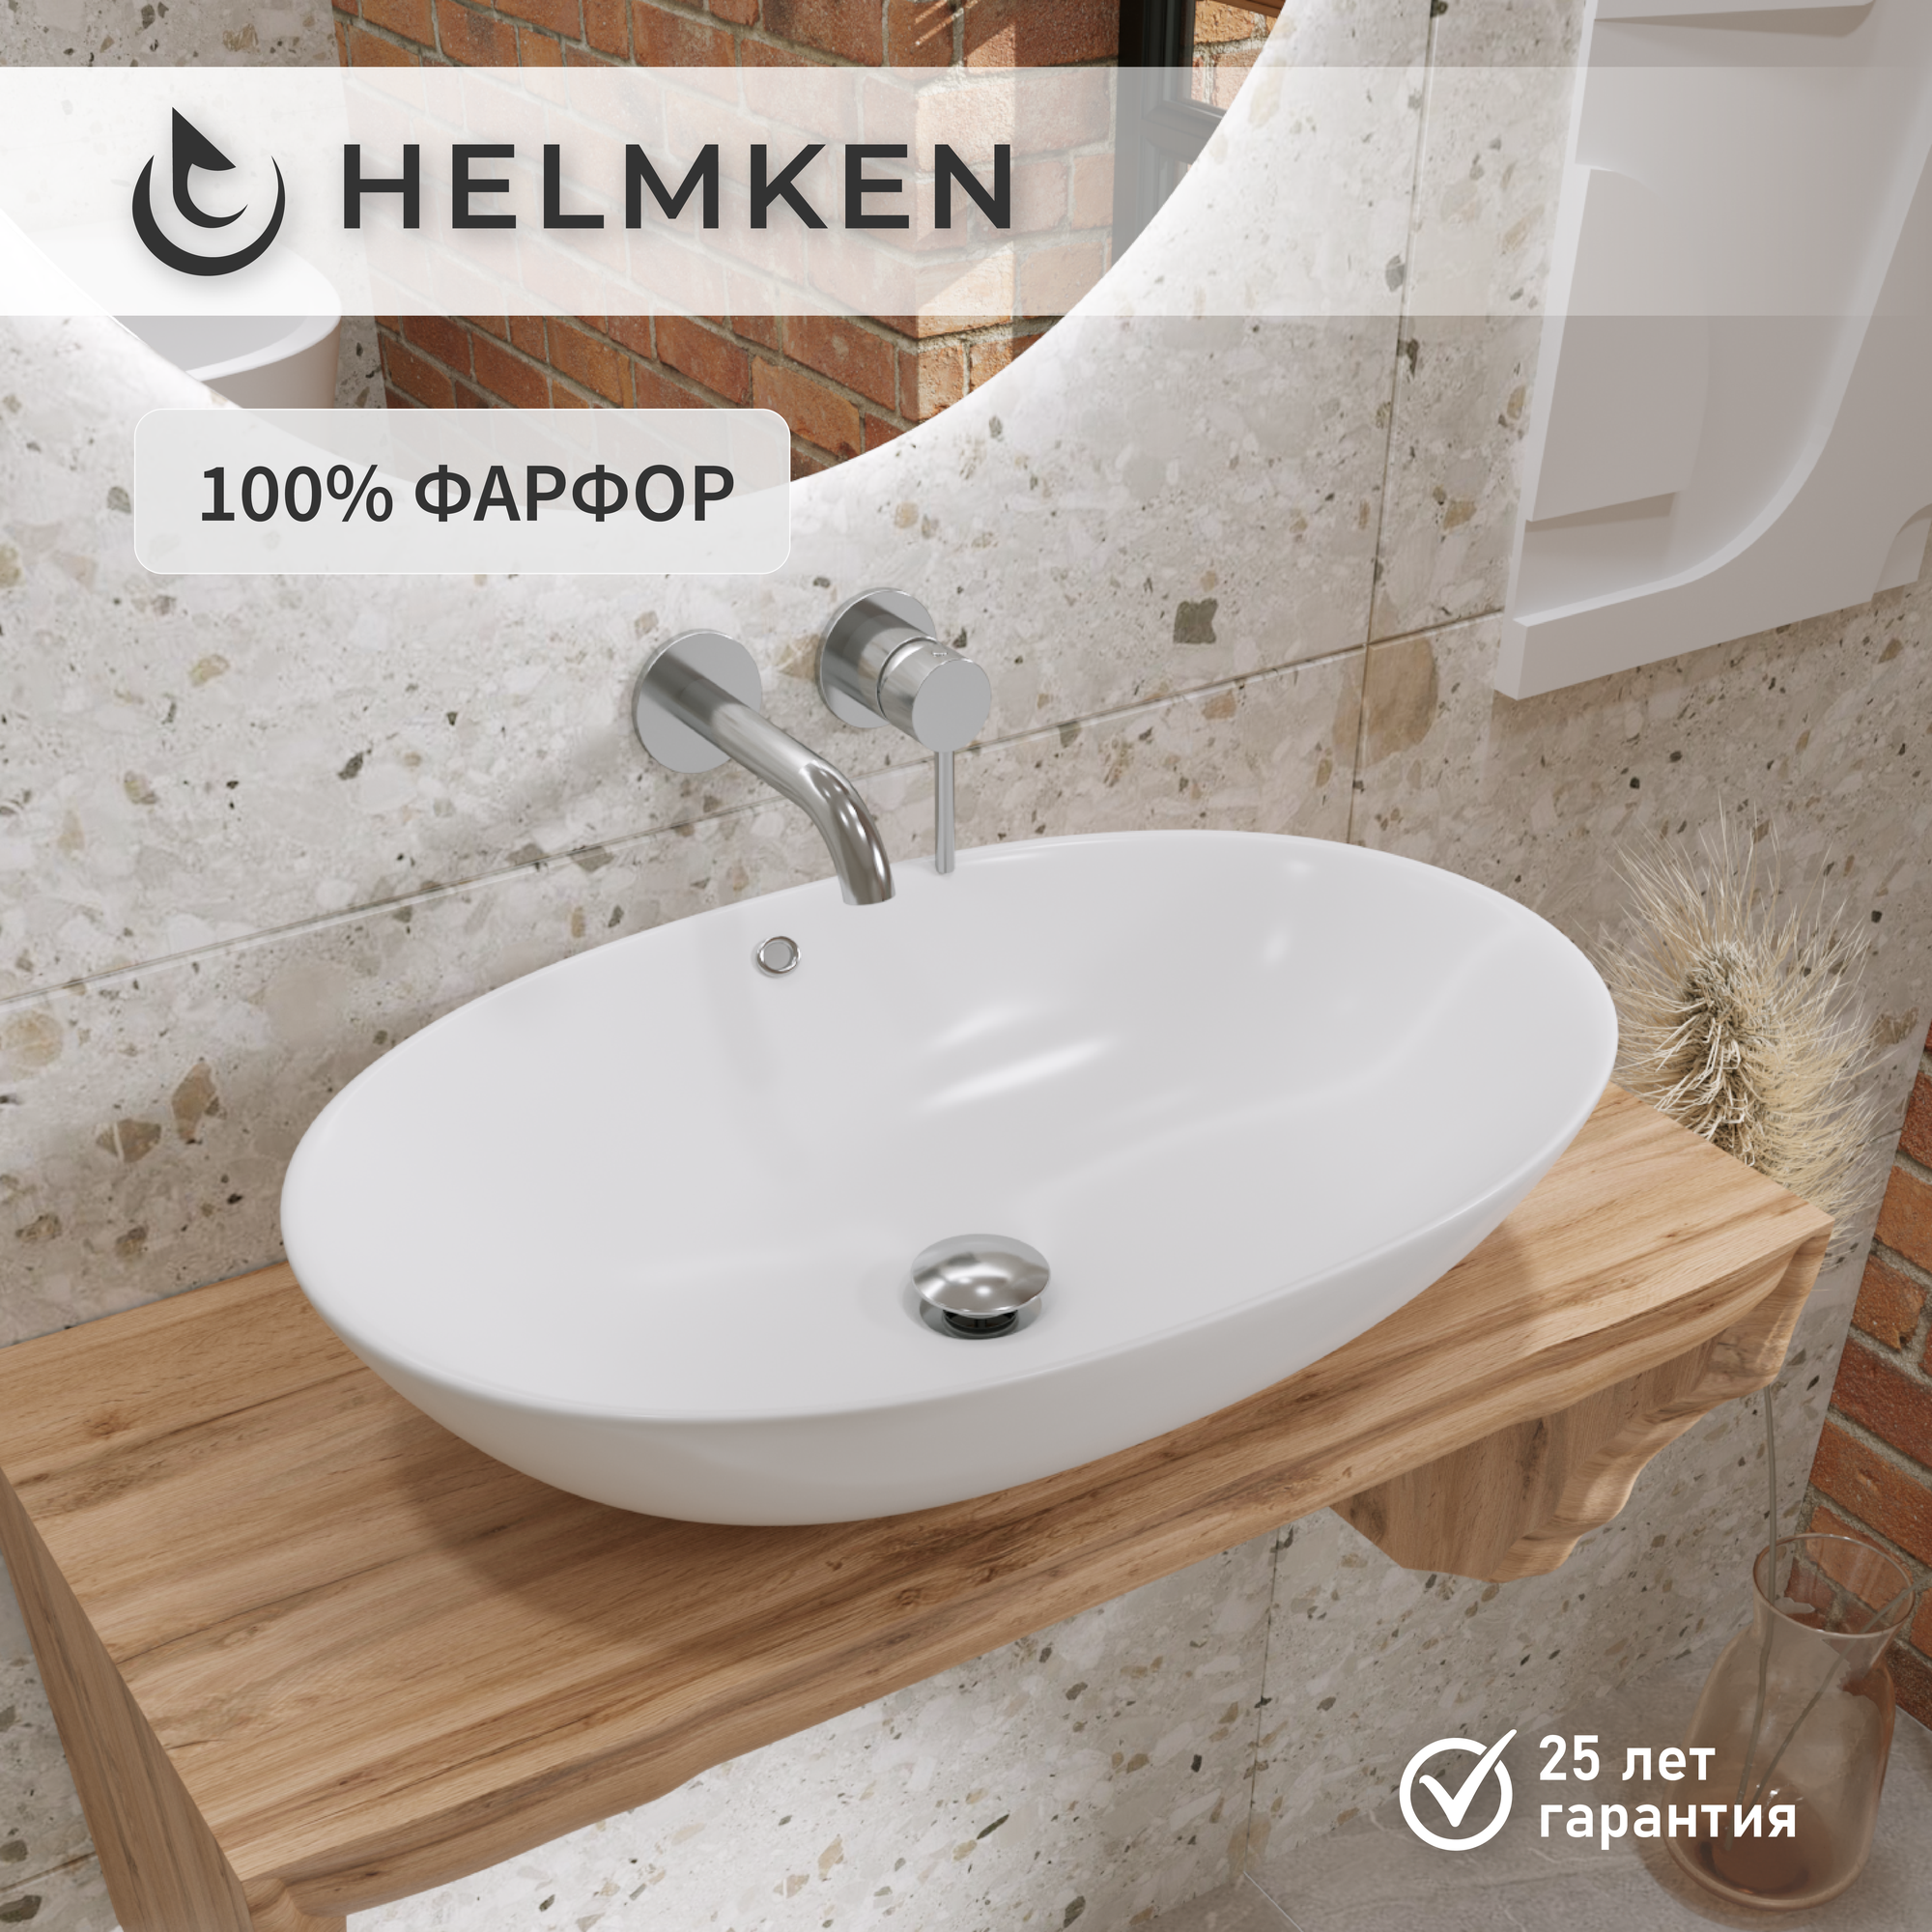 Накладная раковина в ванную Helmken 70962000: умывальник овальный из фарфора 62 см, перелив, белый цвет, гарантия 25 лет